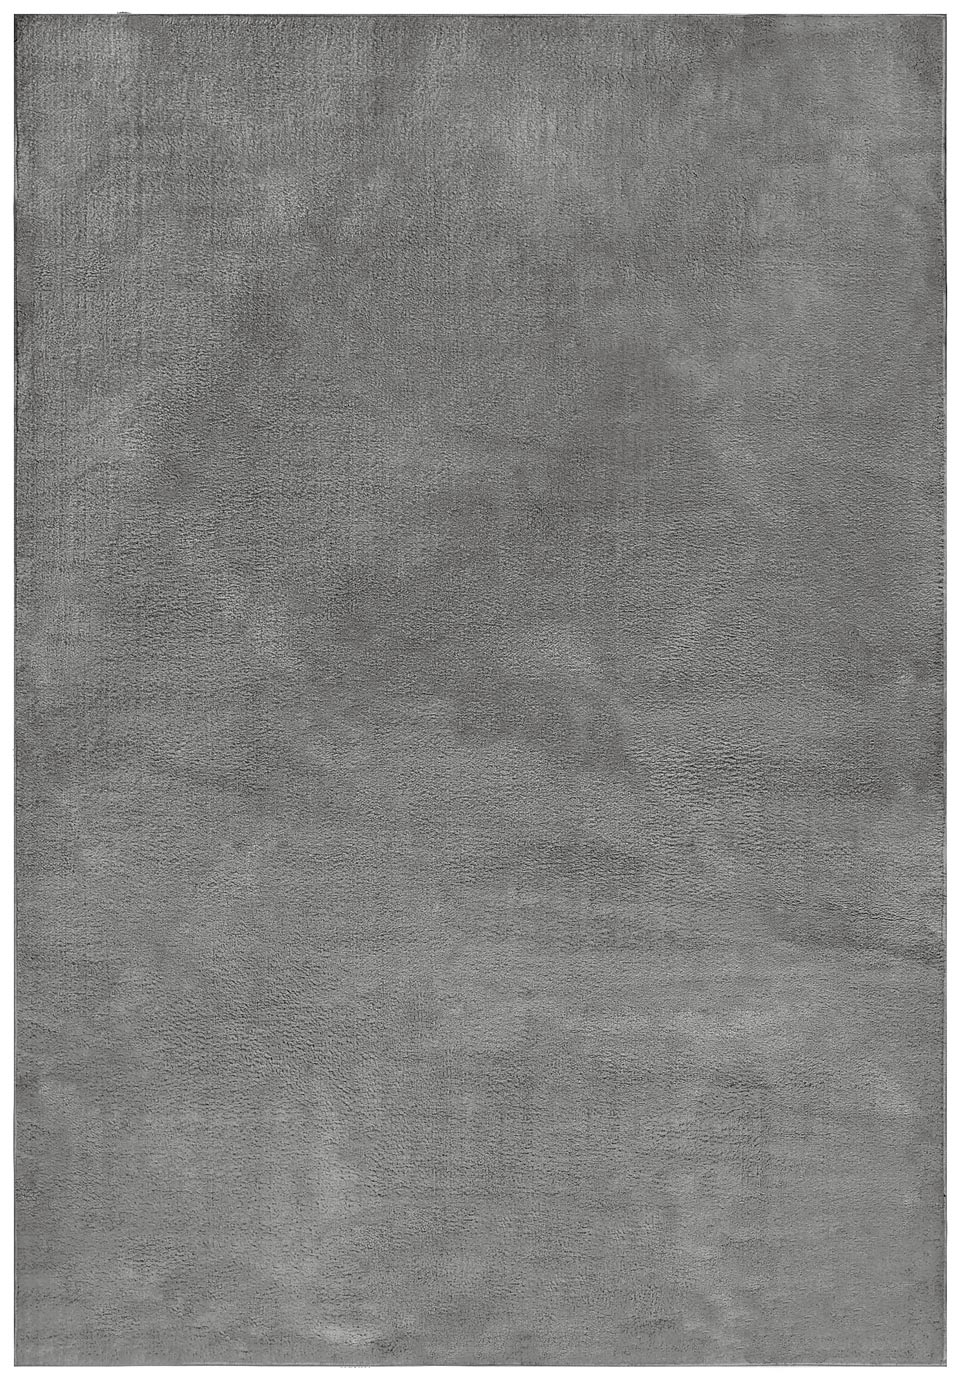 Tapis douillet uni gris foncé collection Boheme 60X115. MA Salgueiro. 